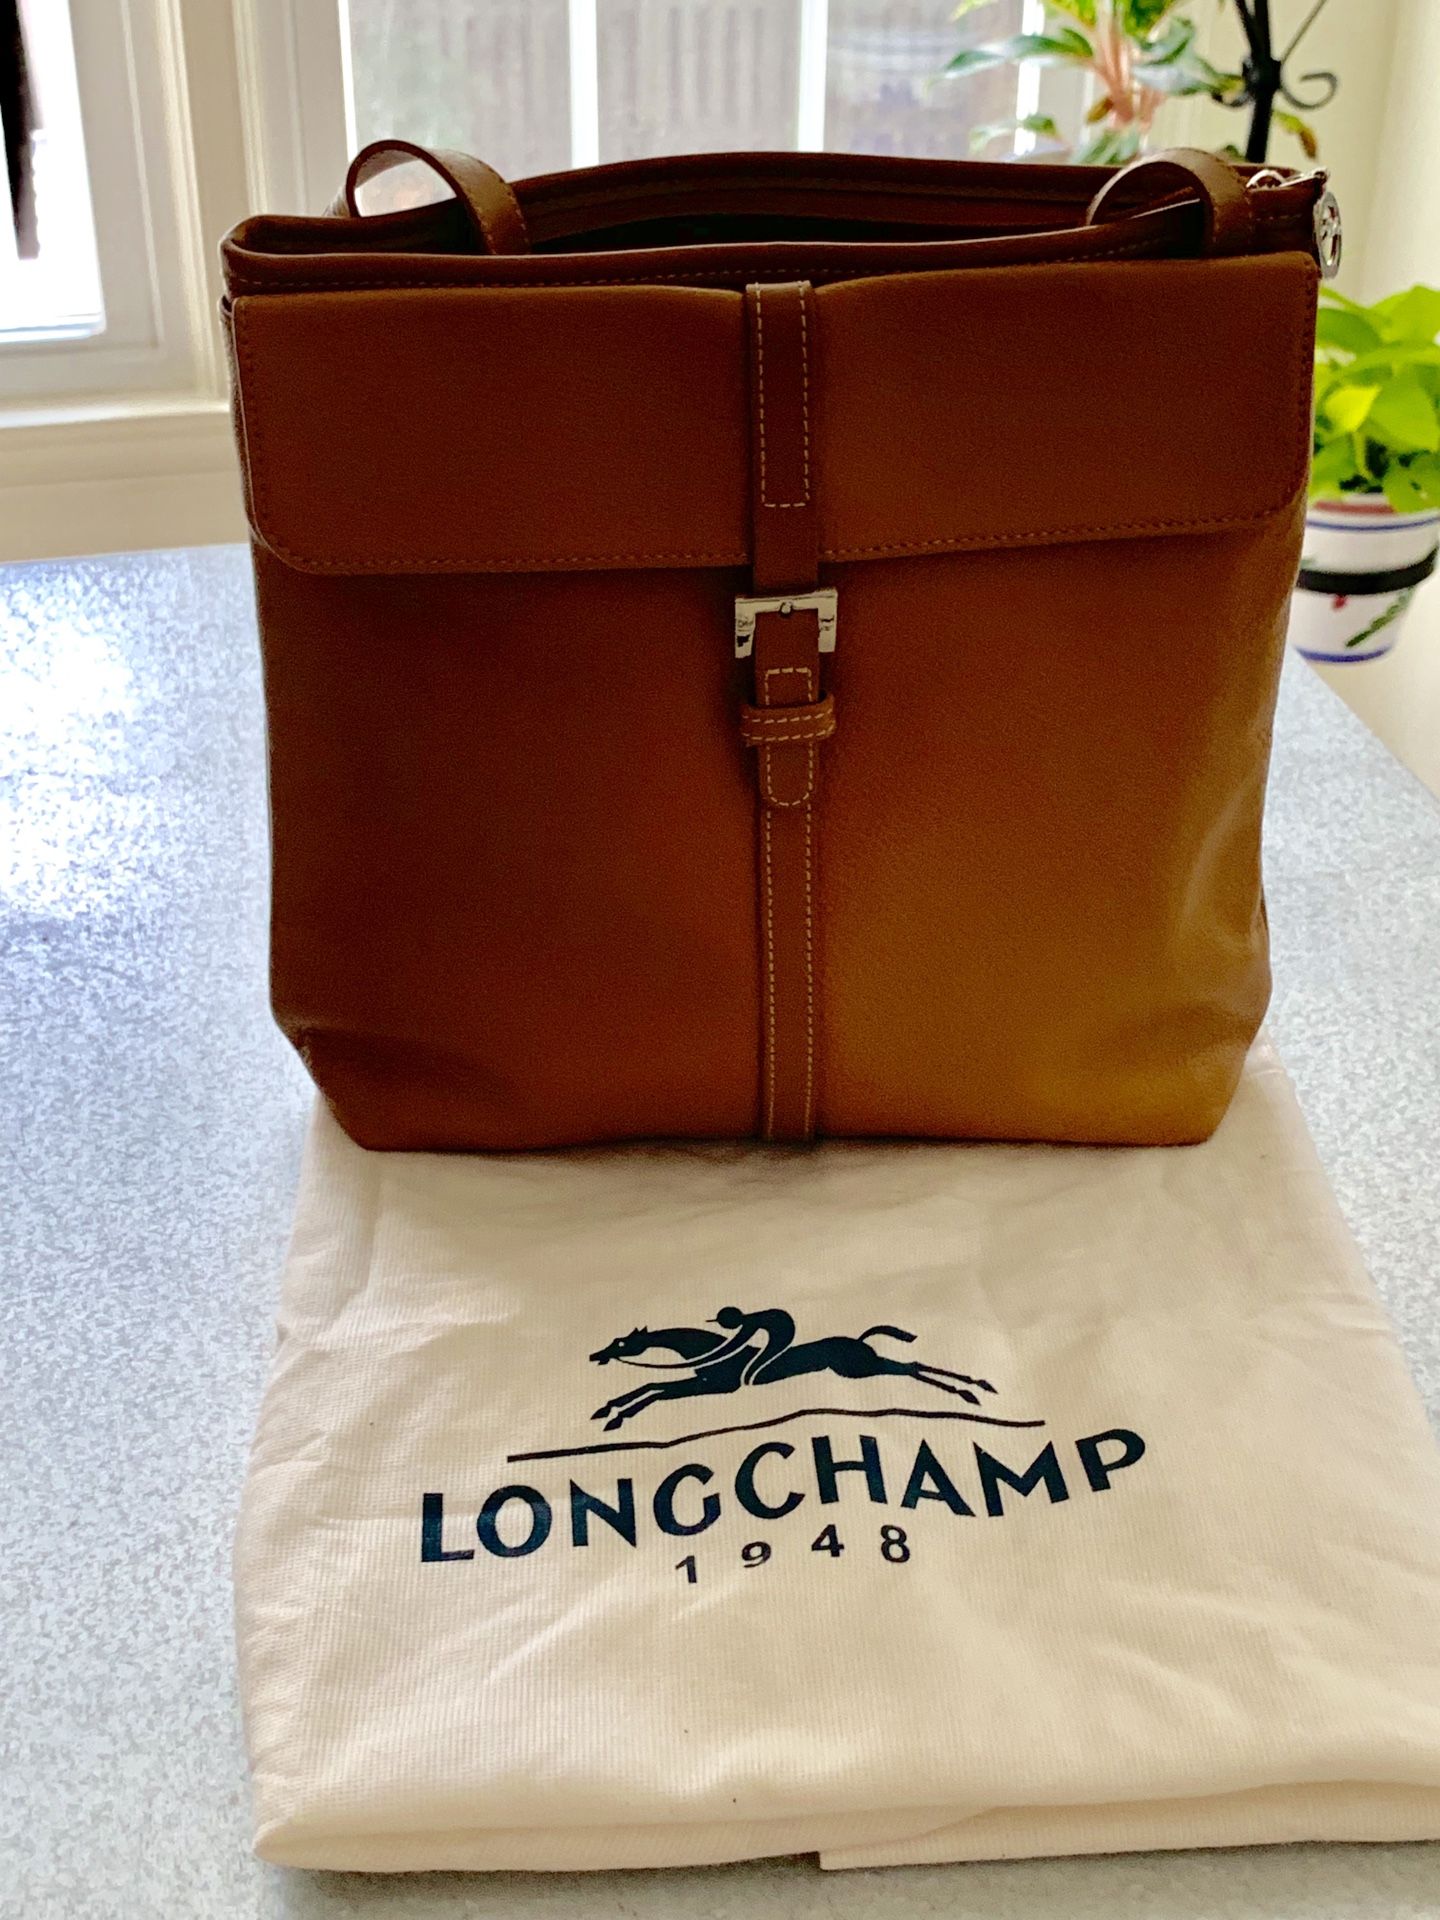 Longchamp purse, crossbody, multiple dividing pockets, EXCELLENT condition!